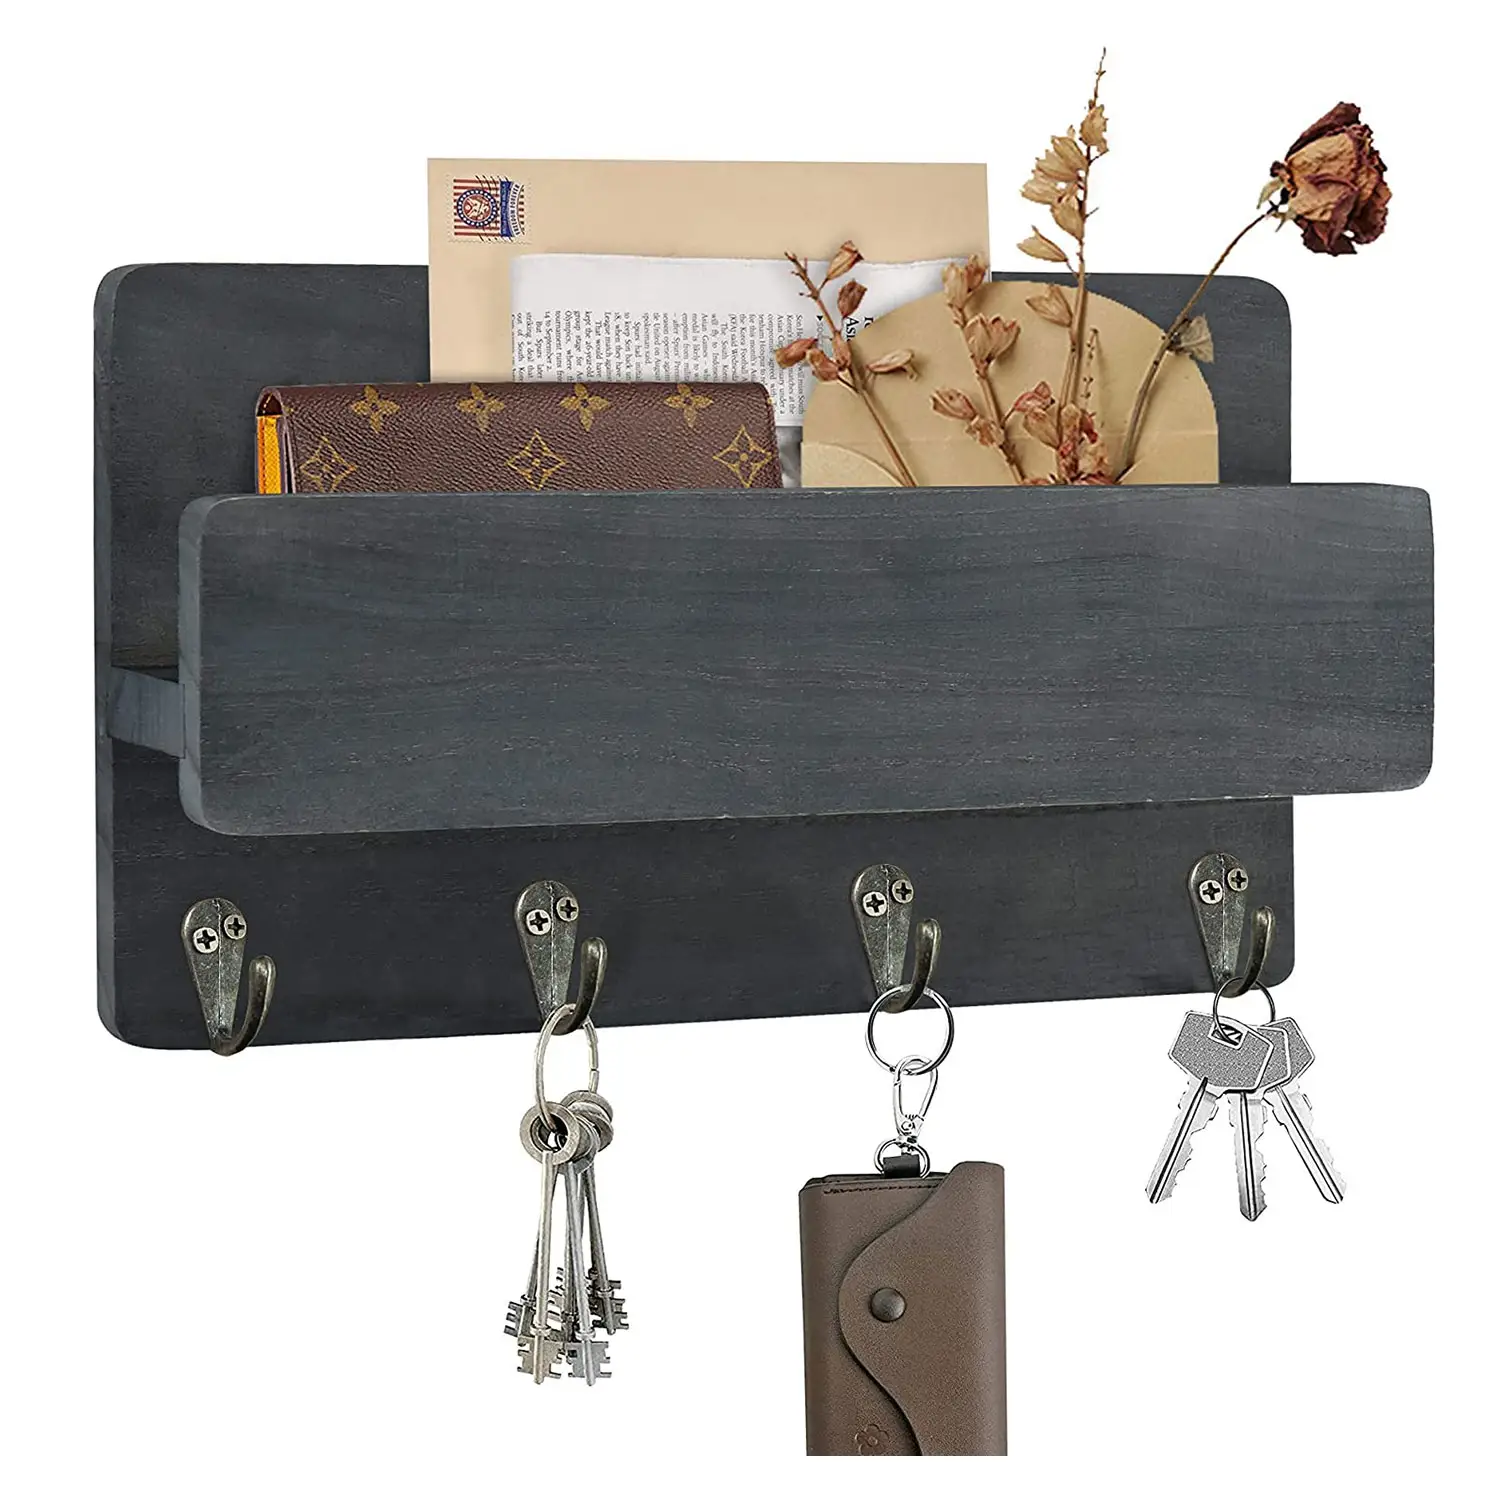 Suporte rústico de parede de madeira com 4 ganchos, organizador de entrada para correio de carta, suporte de revista